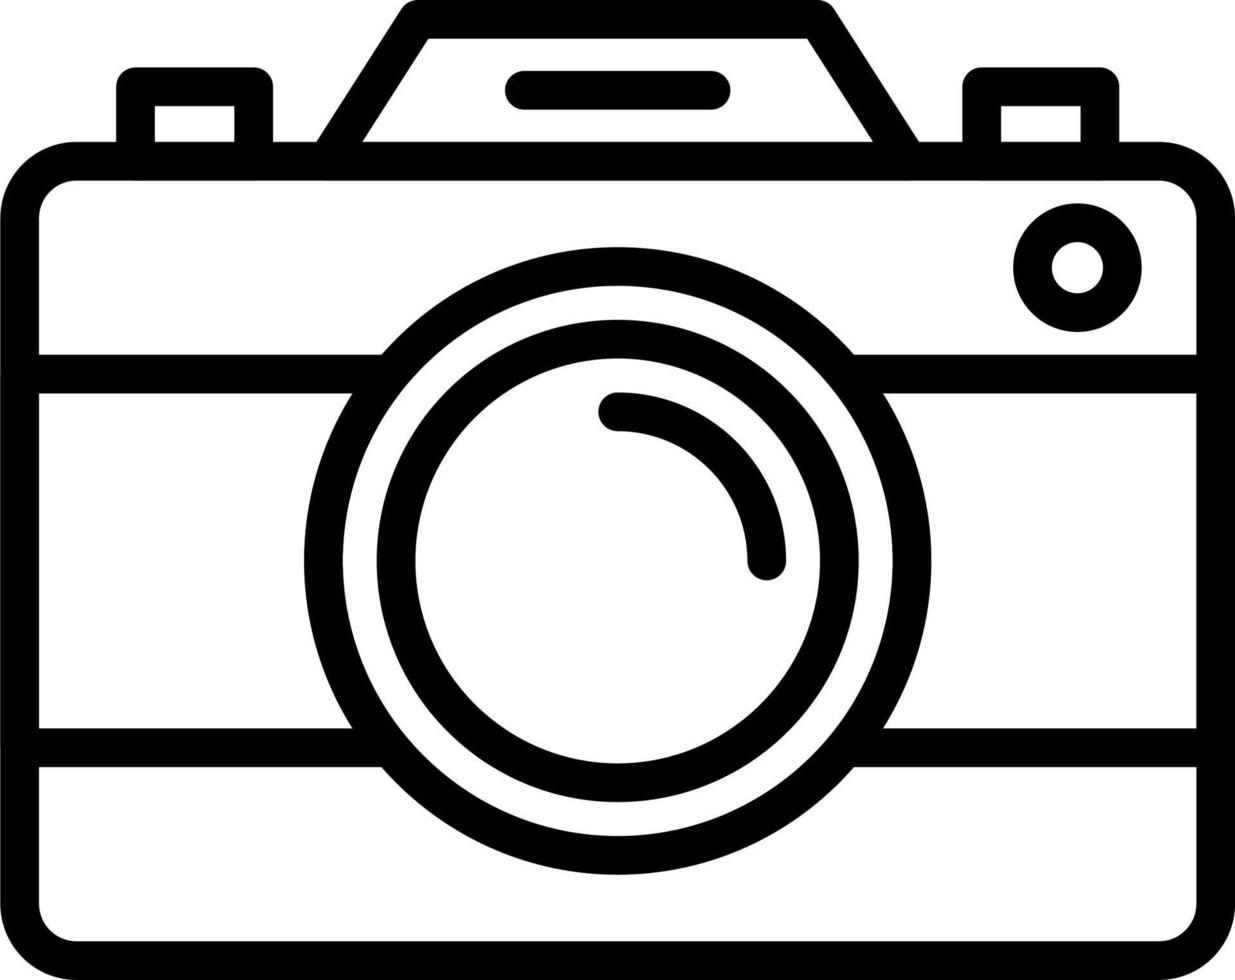 camera vector pictogram